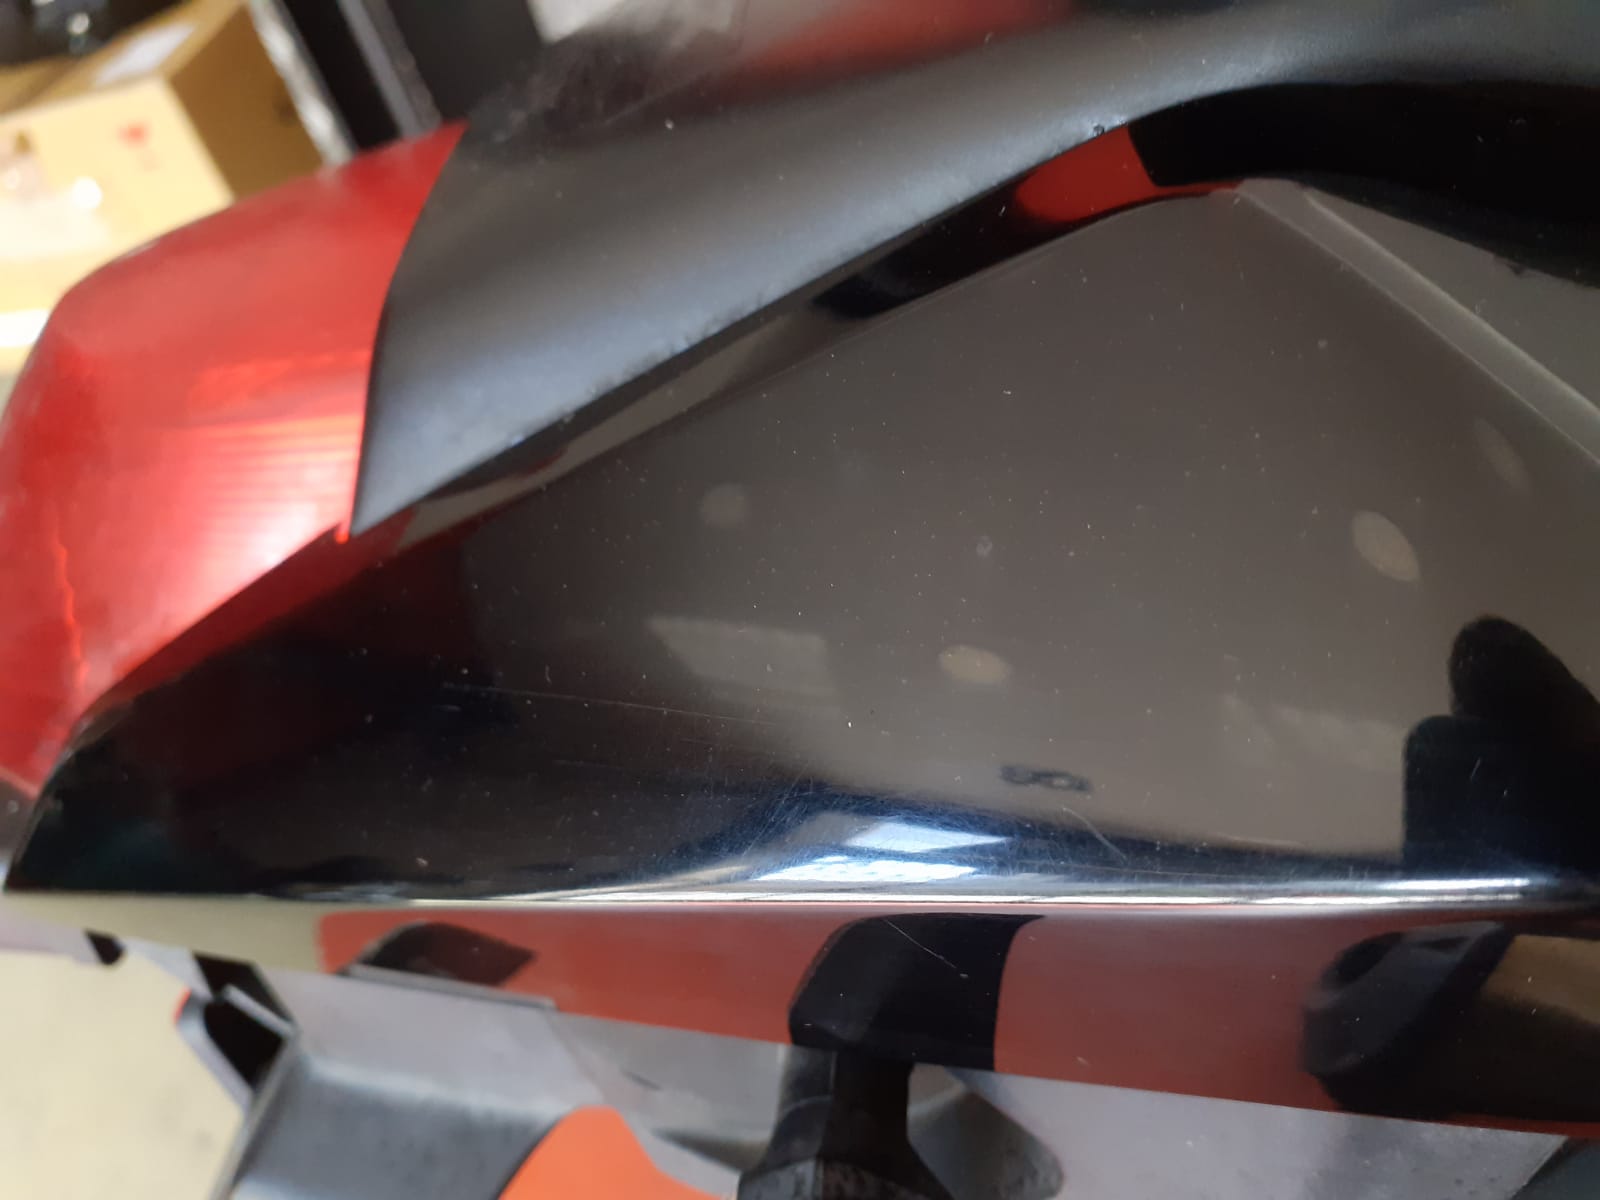 Cómo reparar arañazos en plasticos de la moto ⇨ Método casero